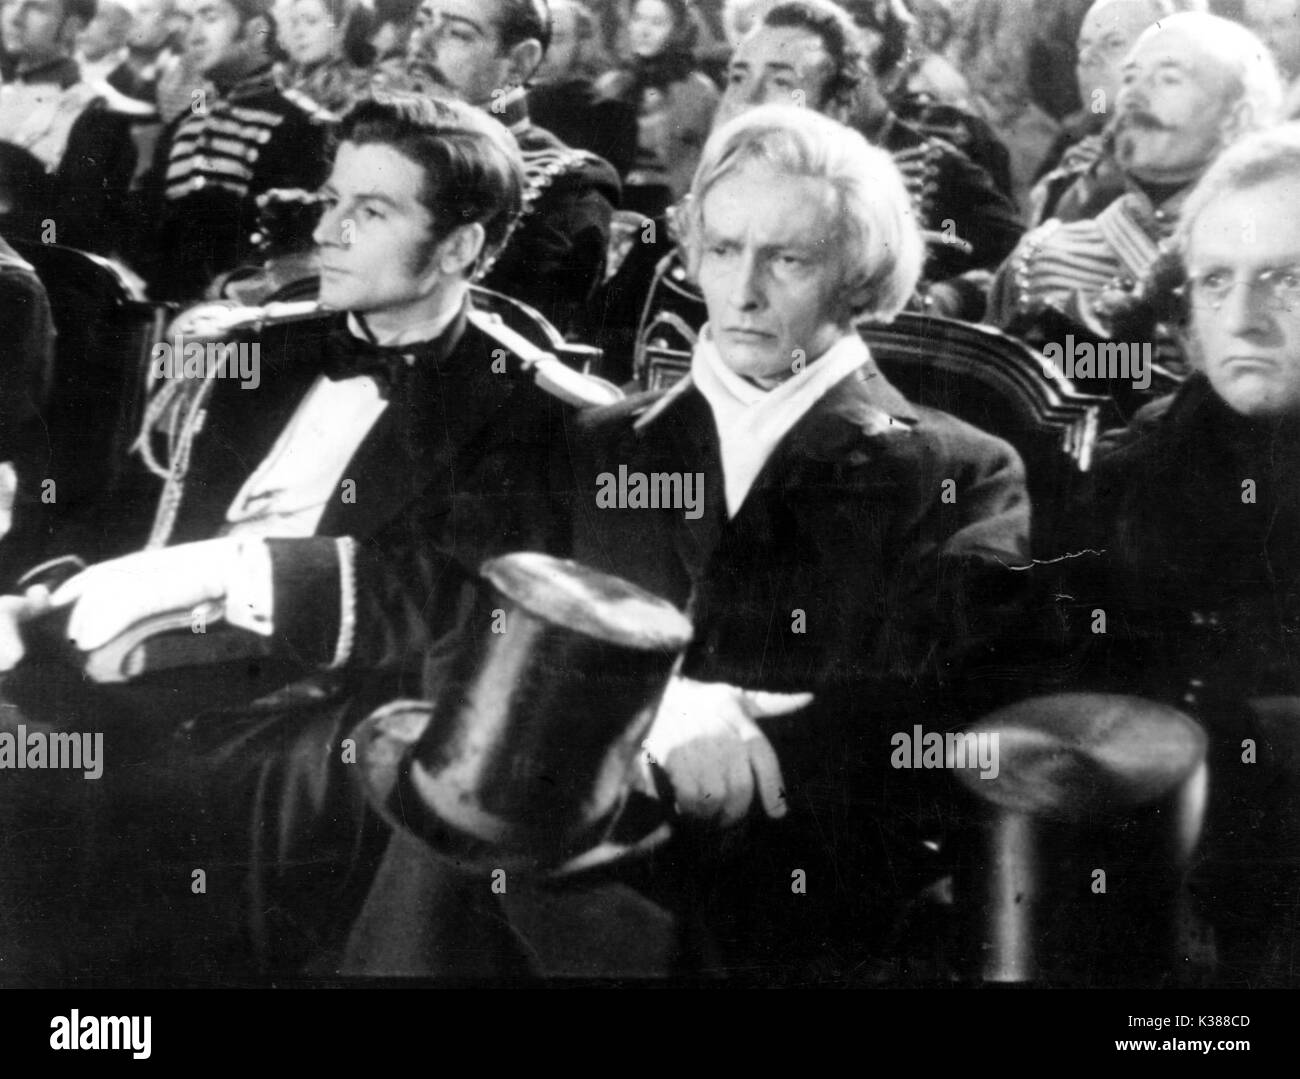 LA SYMPHONIE FANTASTIQUE [FRANCE 1942] JEAN LOUIS BARRAULT AS HECTOR BERLIOZ  A L'ATALIER FRANCAISE PRODUCTION     Date: 1942 Stock Photo